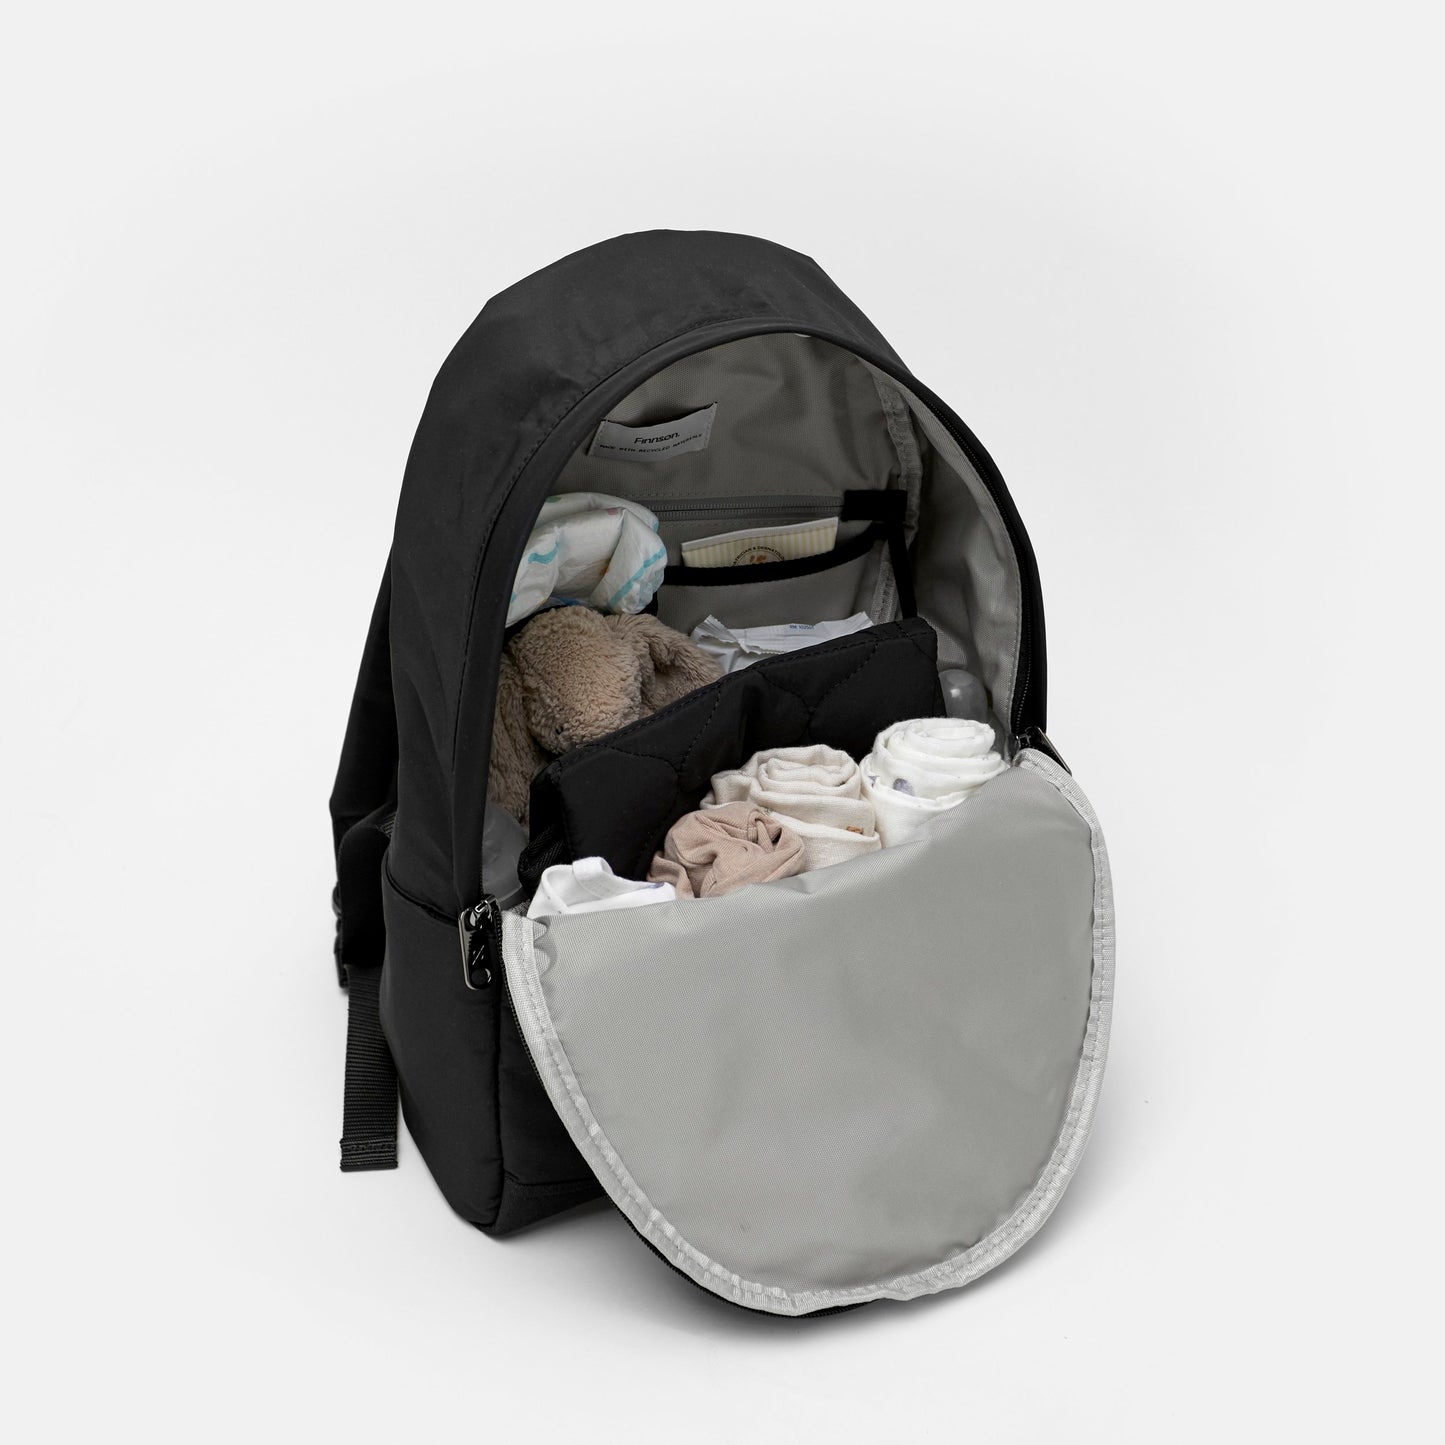 Finnsøn INGE Eco Changing Backpack - Black